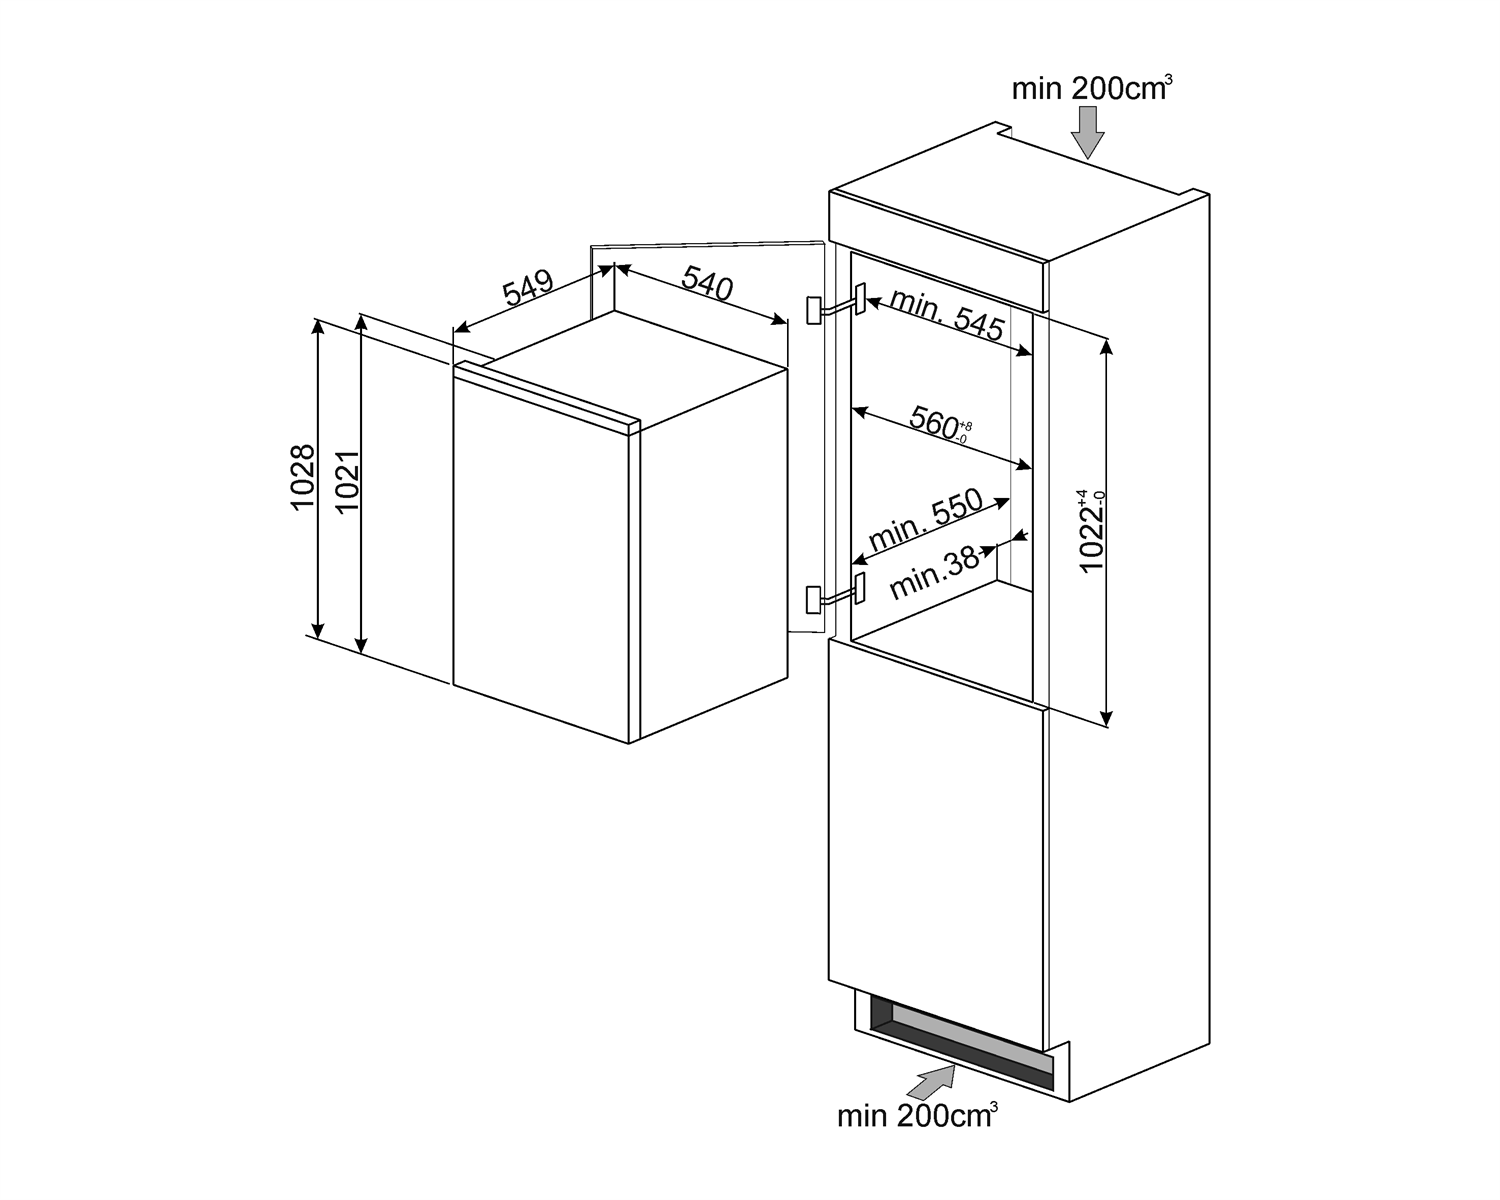 Maattekening SMEG koelkast inbouw S3L100P1